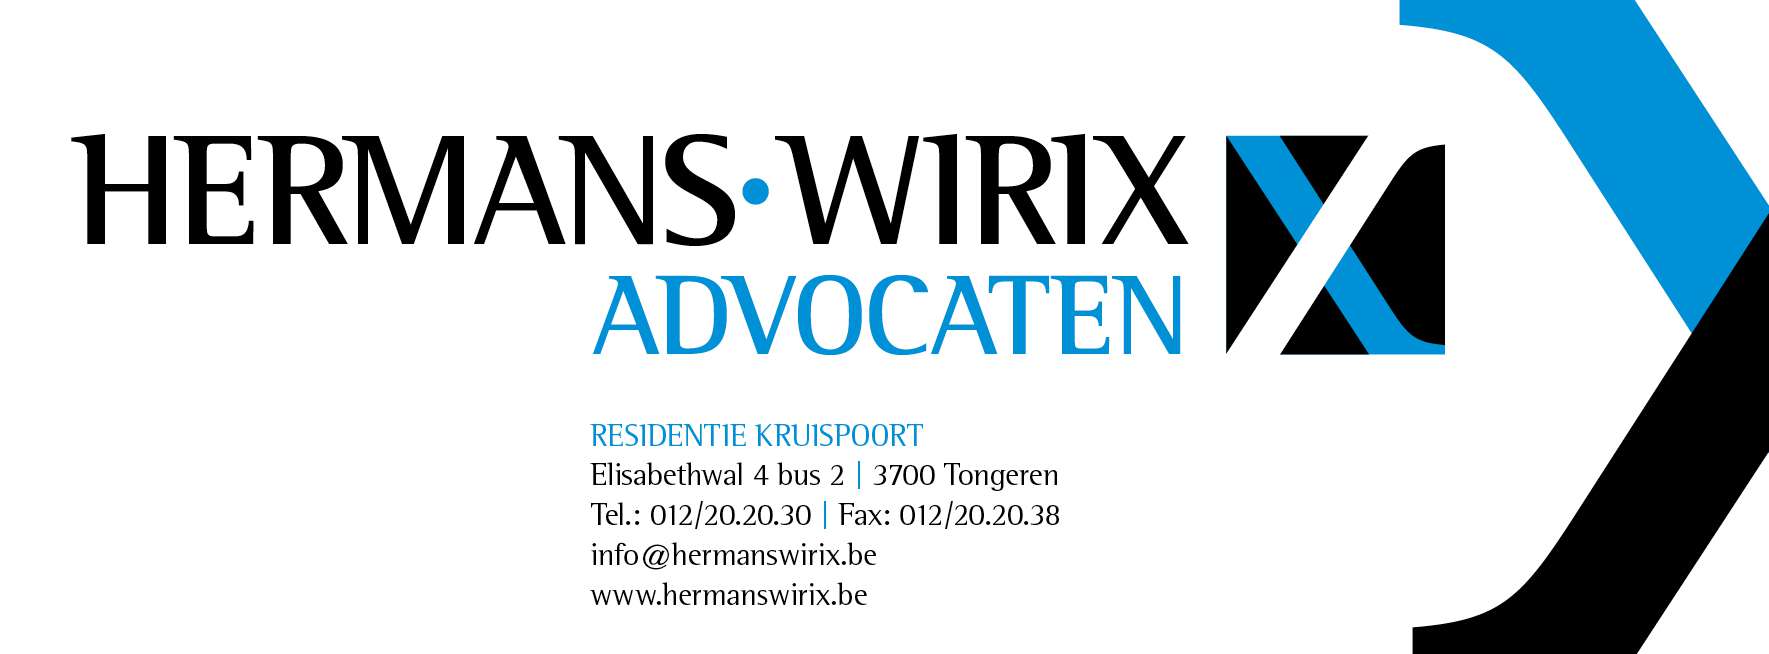 advocaten Genk Hermans-Wirix advocaten